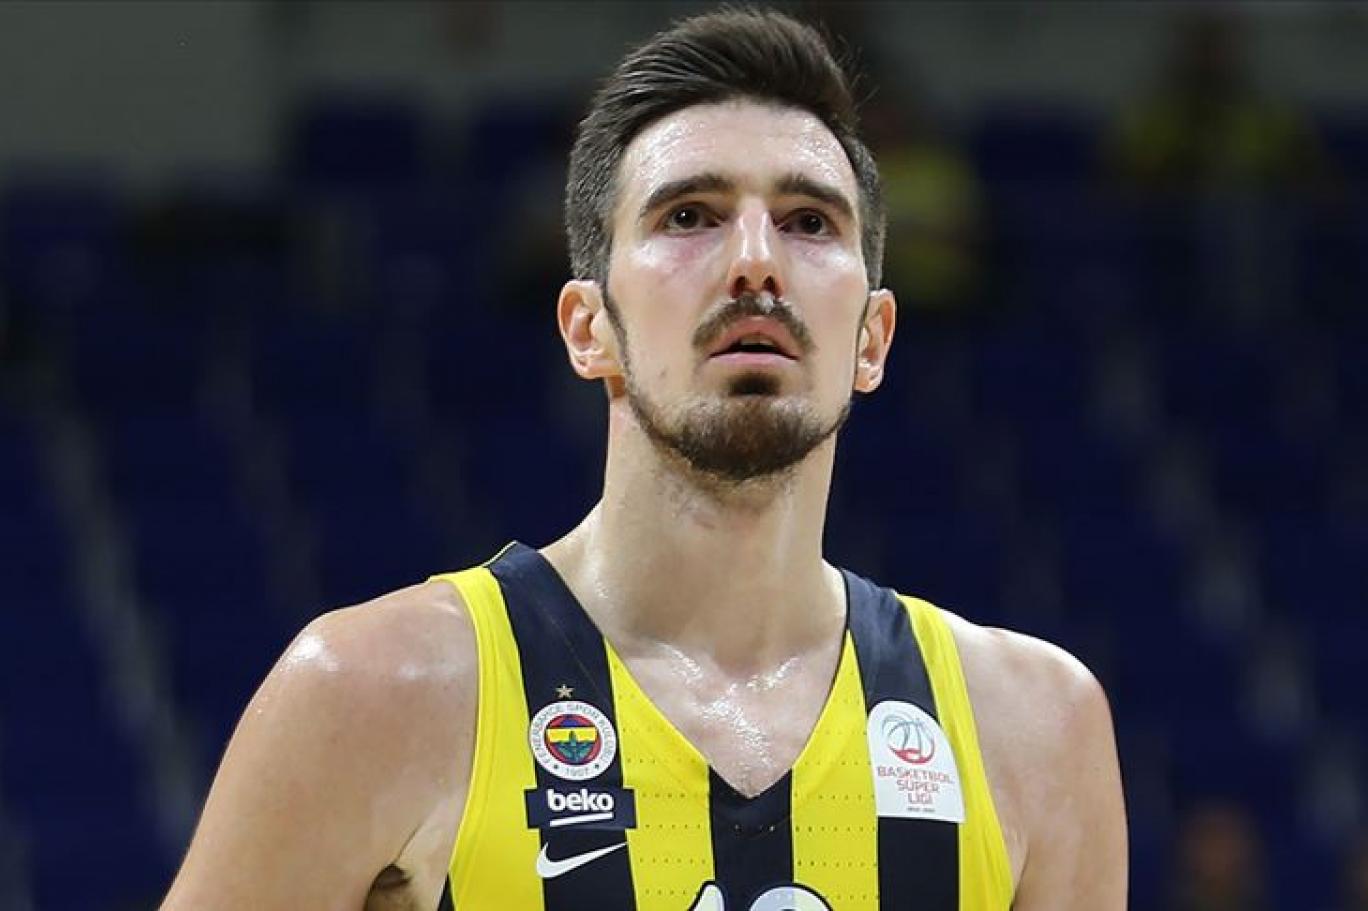 Nando De Colo, Fenerbahçe'den ayrılacağı iddialarına yanıt verdi: Sözleşmem devam ediyor, yeni koçun gelmesini bekliyoruz | Independent Türkçe